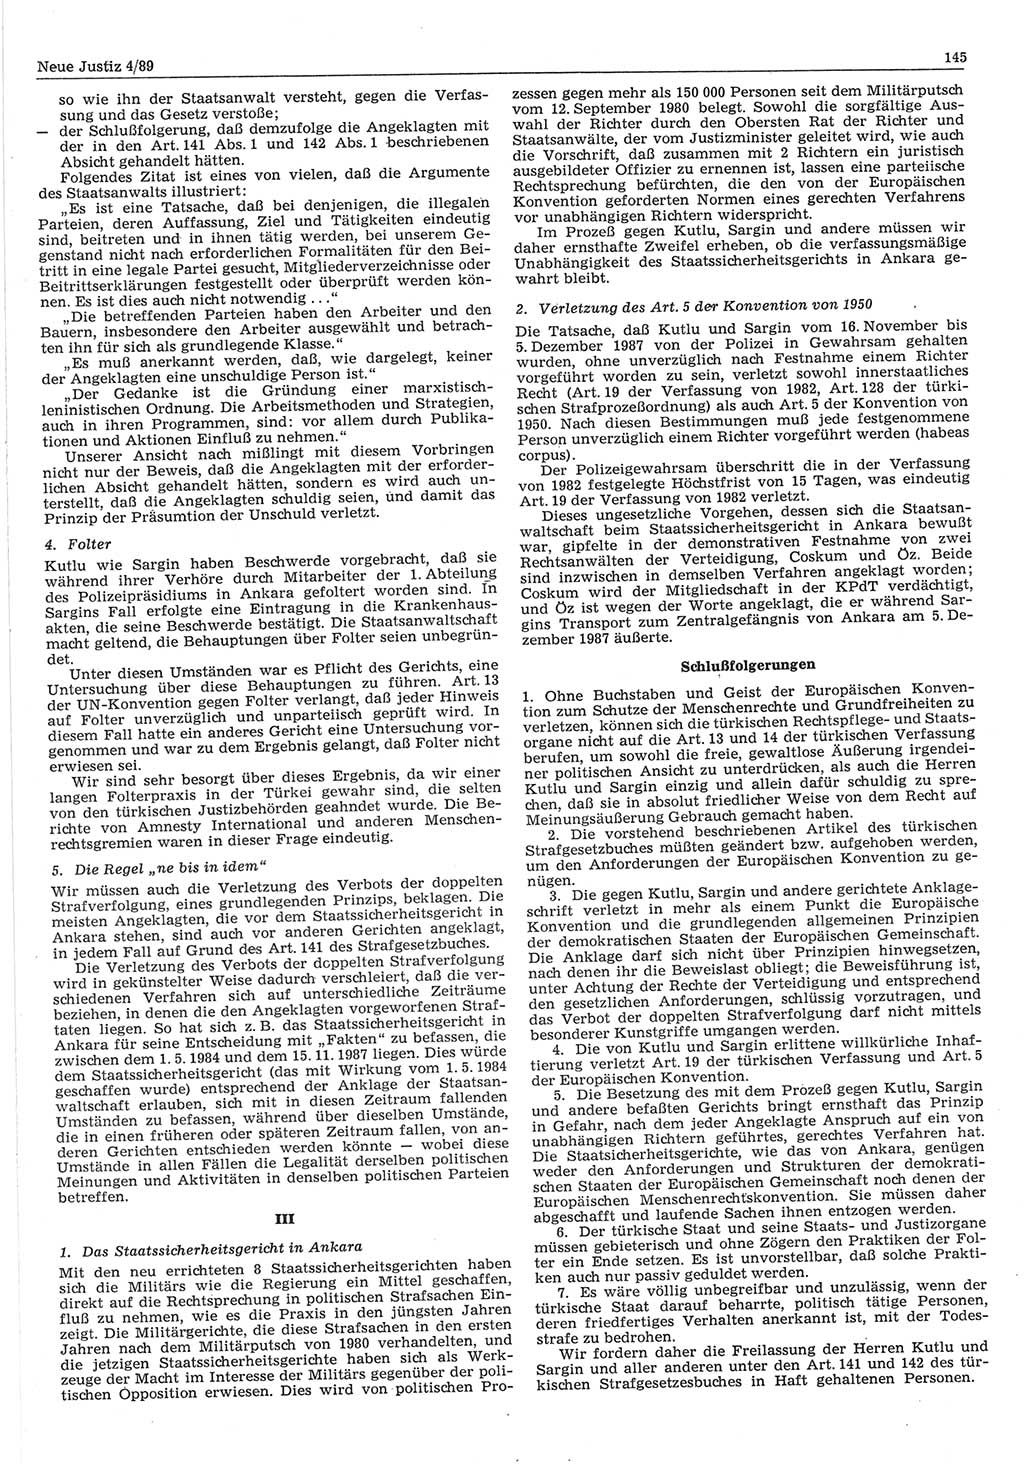 Neue Justiz (NJ), Zeitschrift für sozialistisches Recht und Gesetzlichkeit [Deutsche Demokratische Republik (DDR)], 43. Jahrgang 1989, Seite 145 (NJ DDR 1989, S. 145)